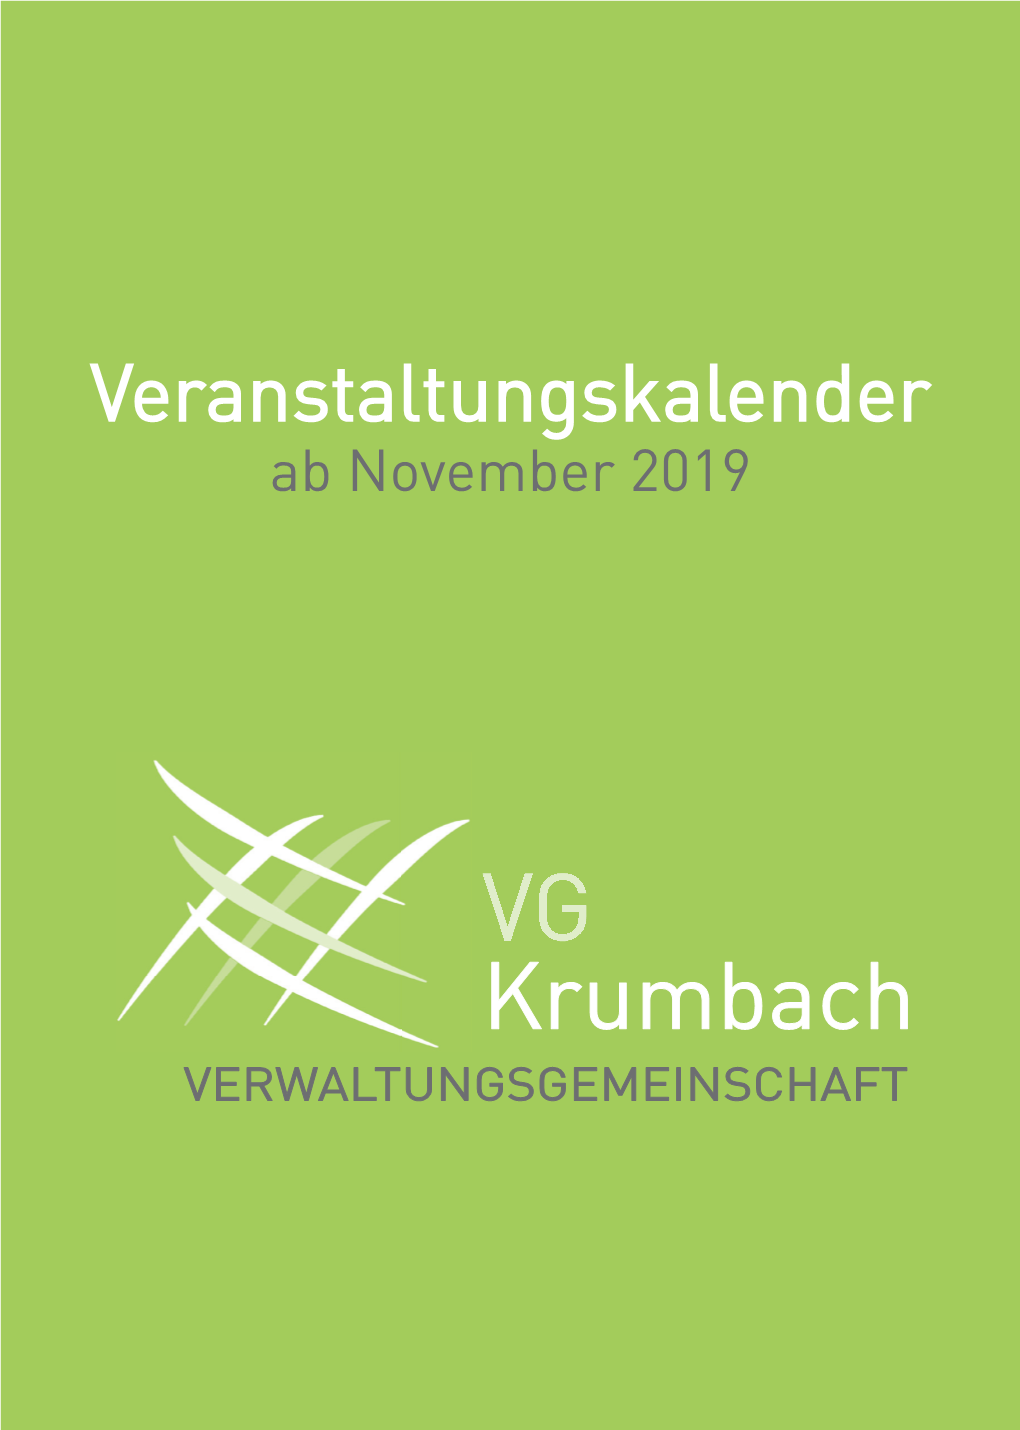 VG Krumbach VERWALTUNGSGEMEINSCHAFT Veranstaltungskalender Ab November 2019